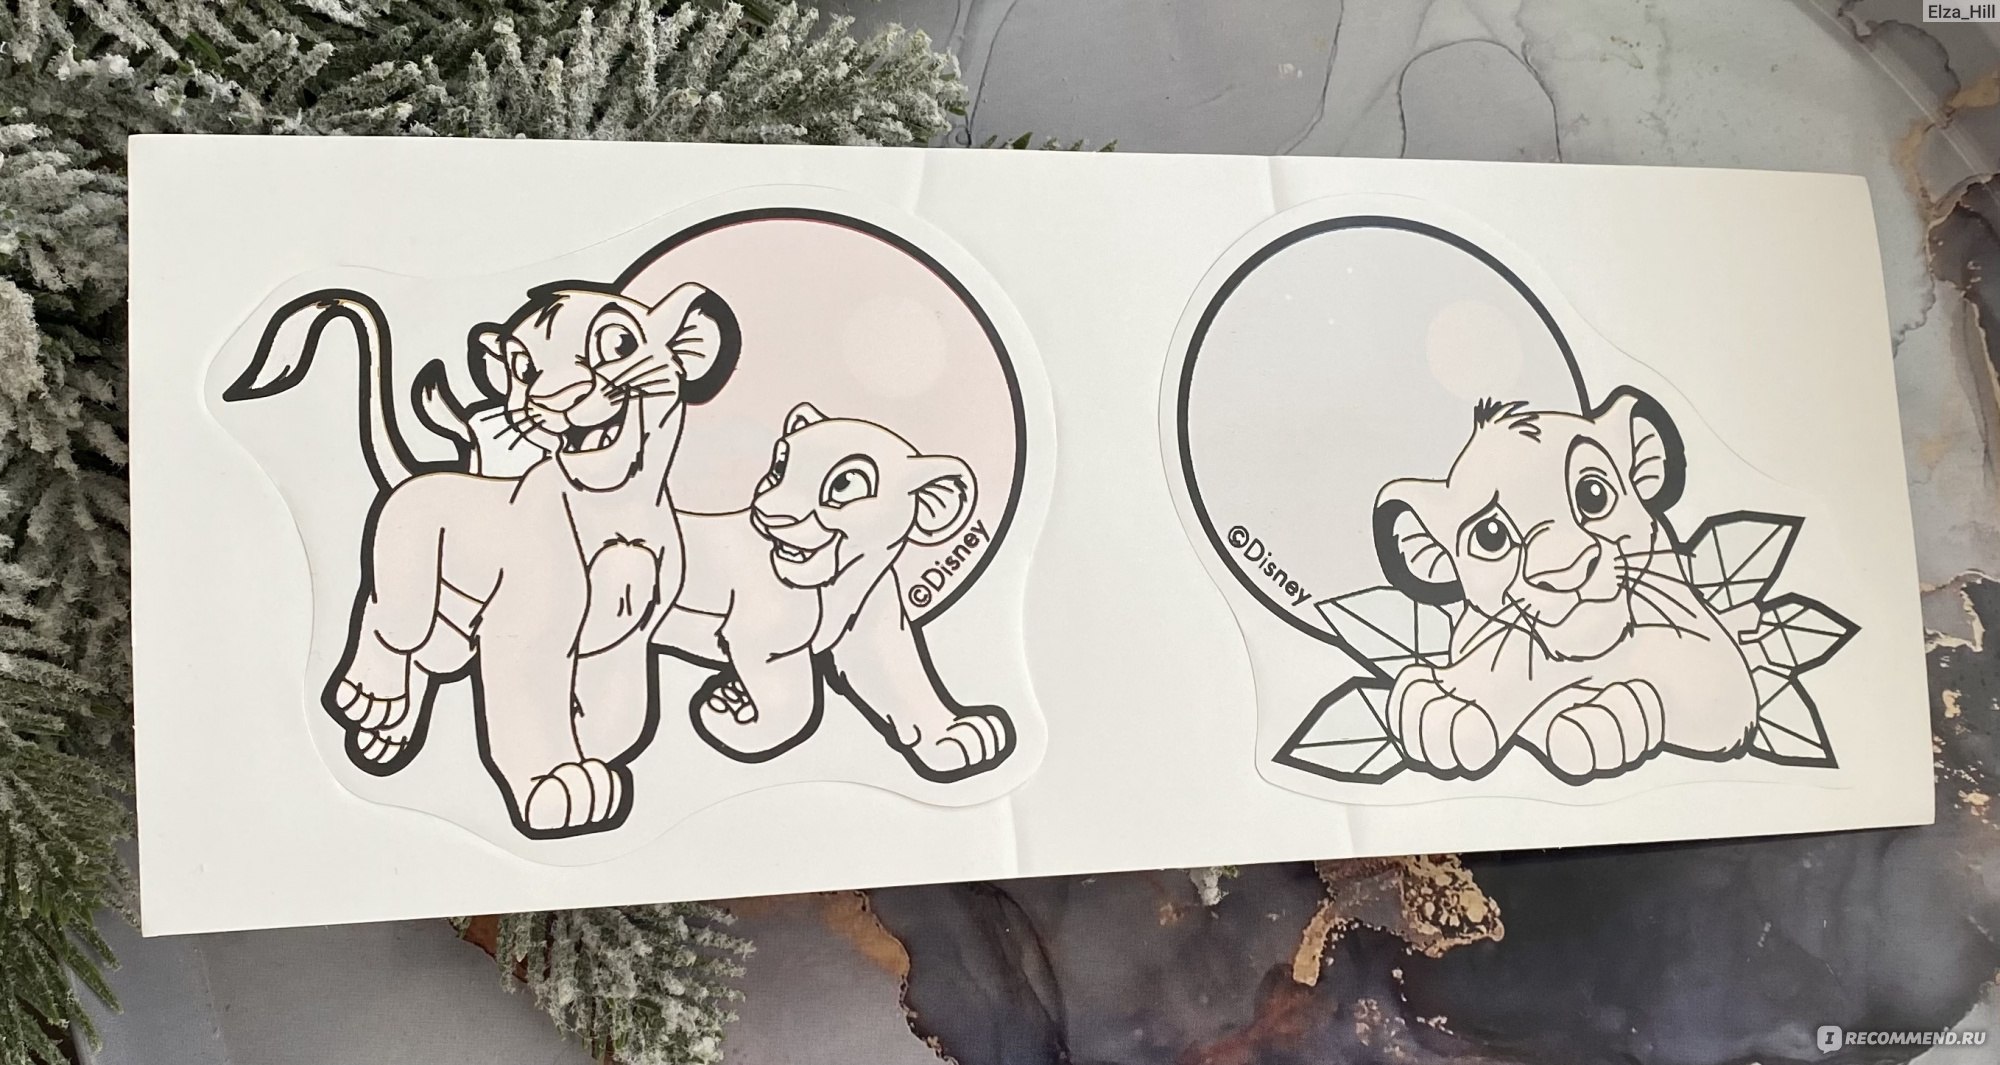 Многоразовая наклейка- раскраска для ванной Pattera Disney "Король Лев" фото